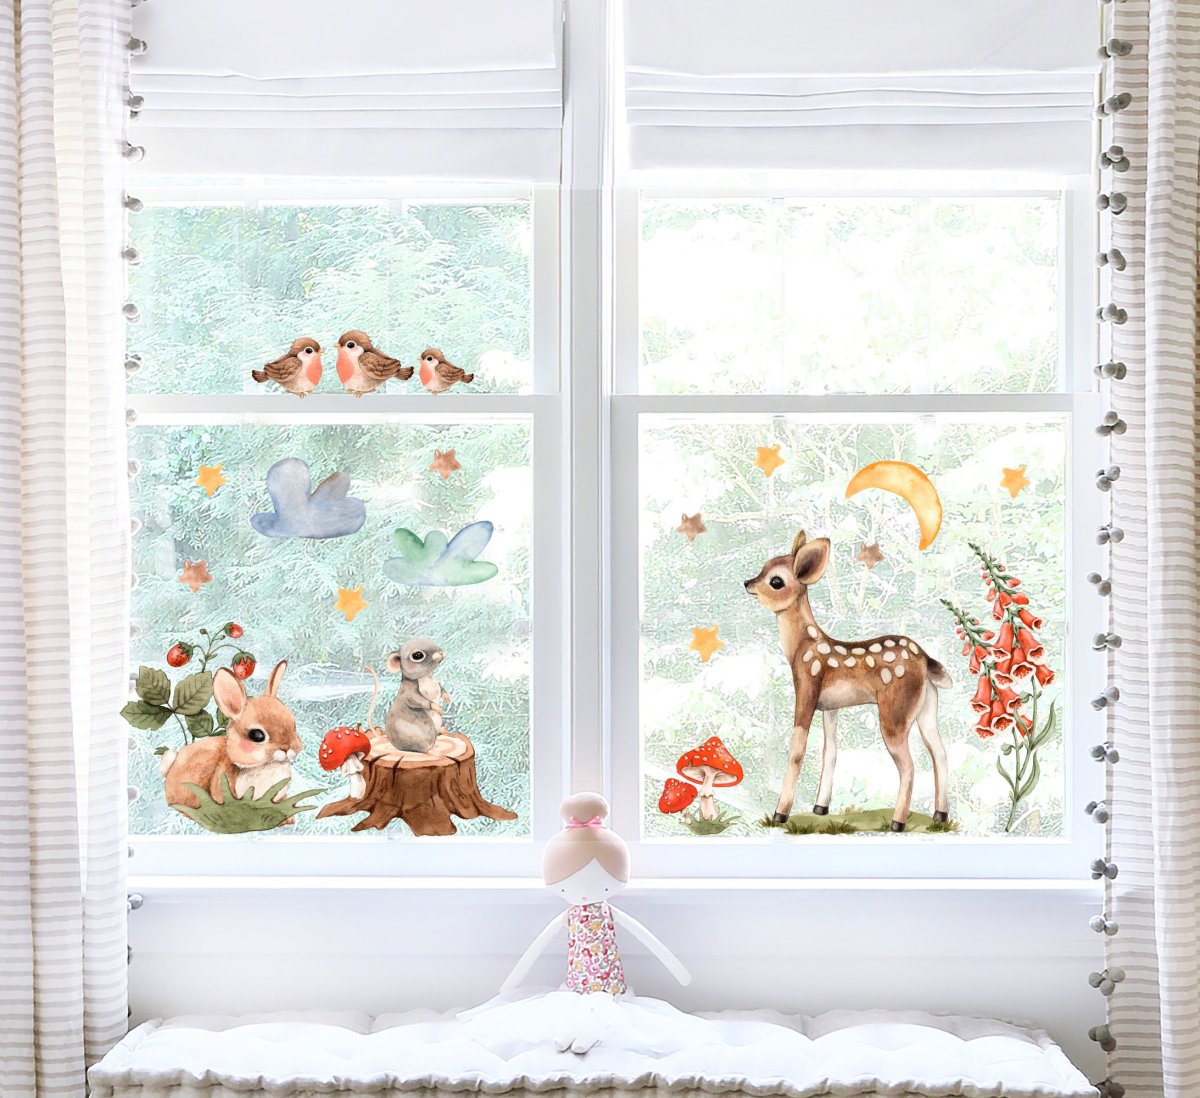 Samolepky na okna Divoké lesní zvířátka do dětského pokoje